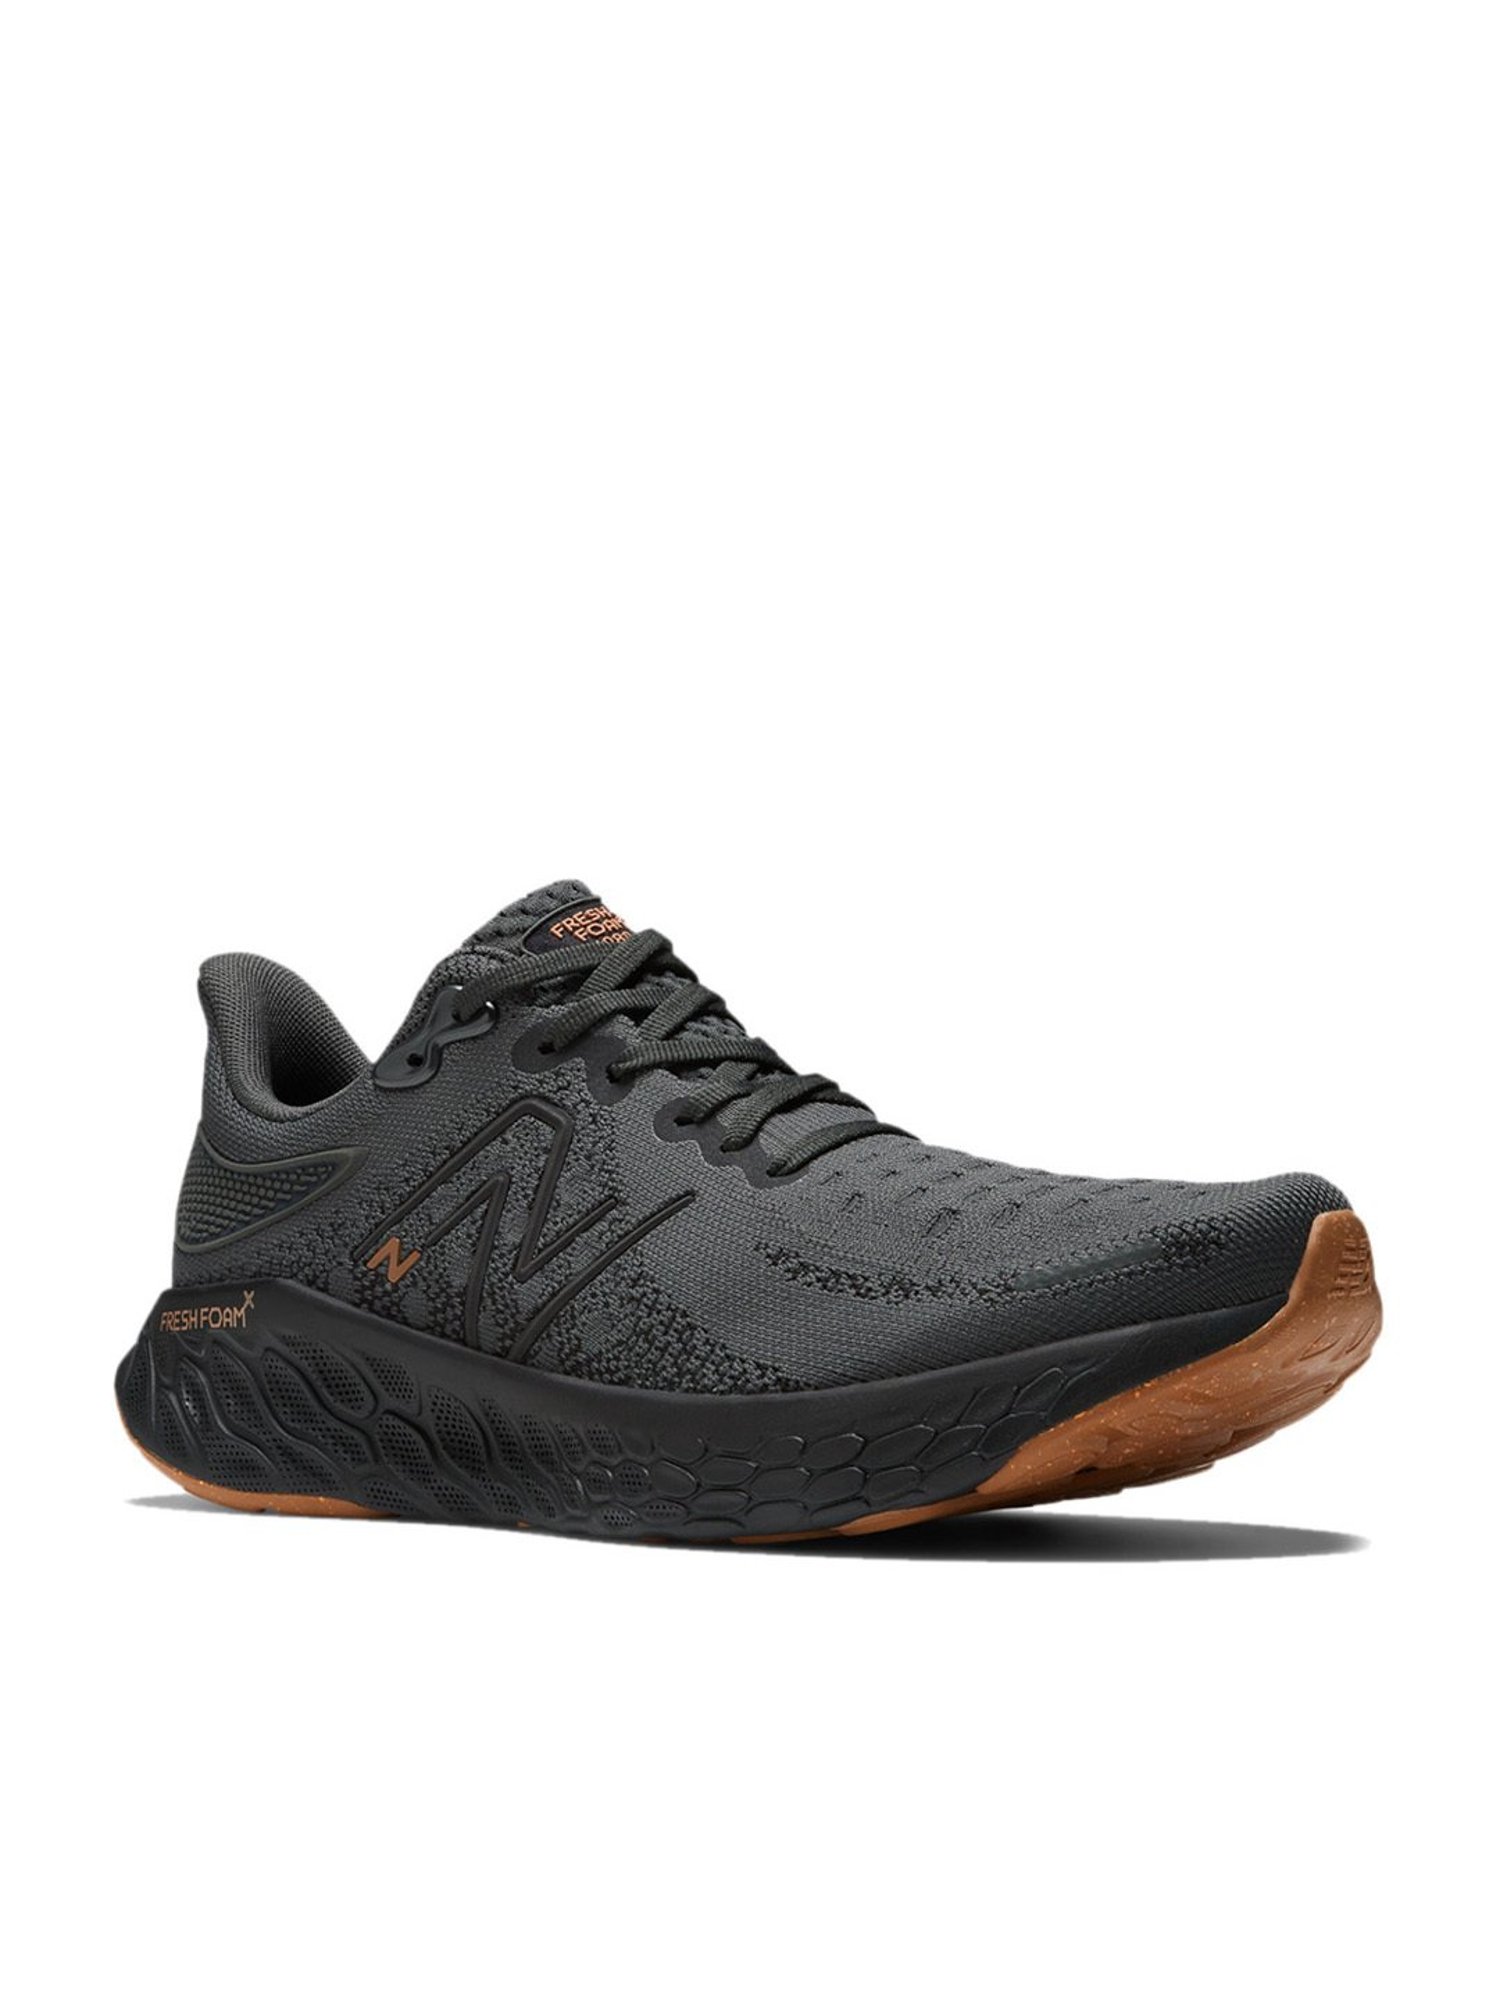 Buy New Balance Men 5740 Black Sneakers Online